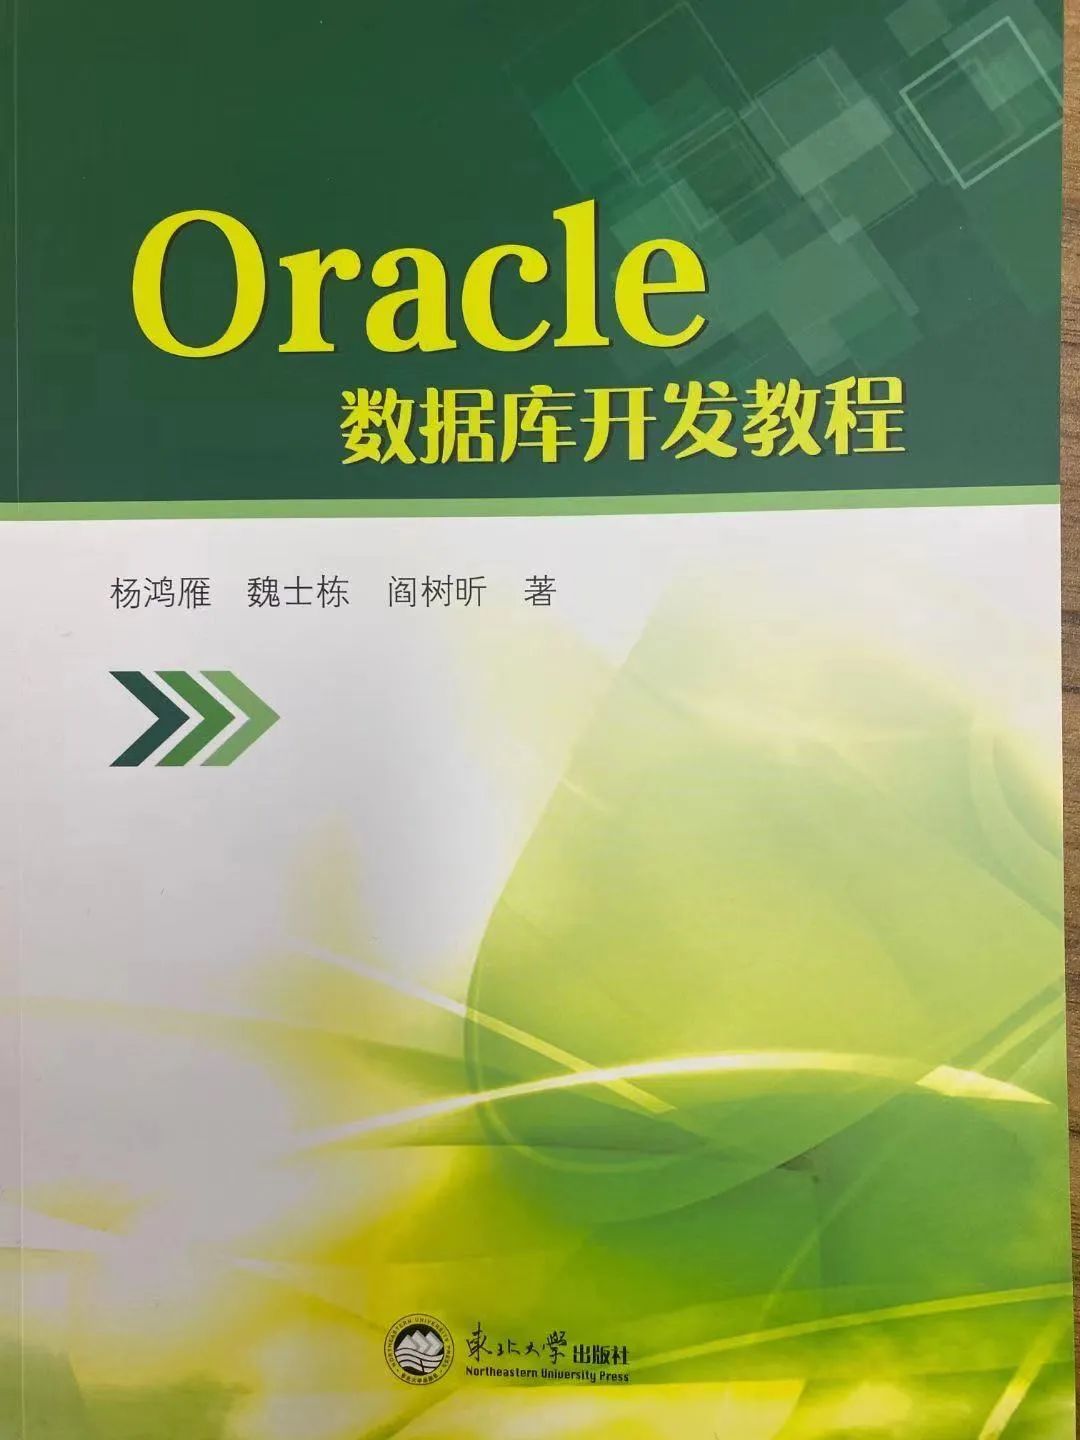 大连中软卓越与合作院校联合出版-Oracle 数据库开发教程